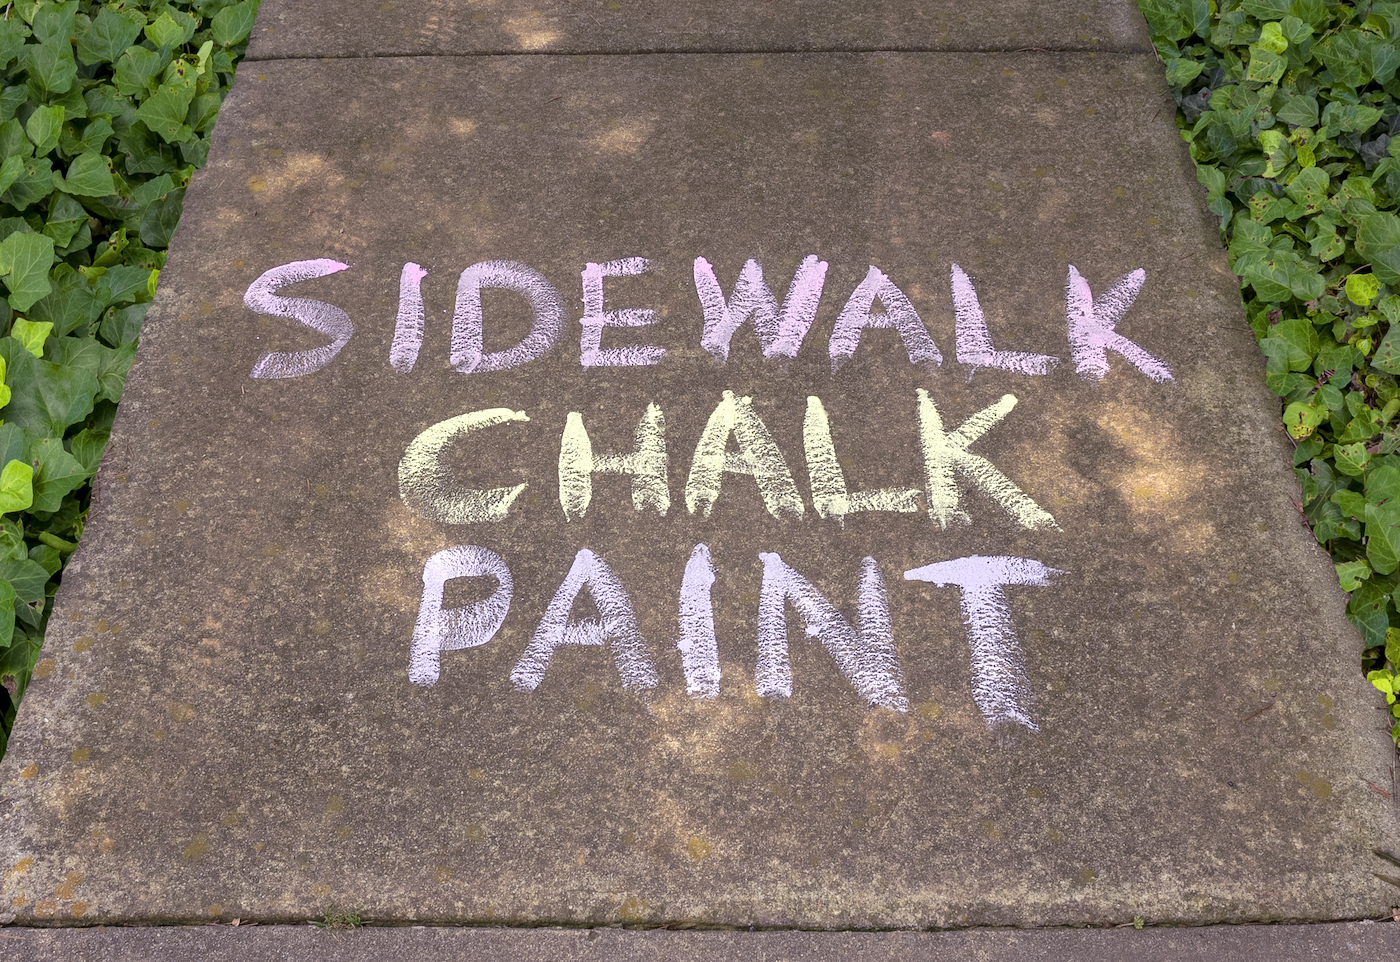 DIY Sidewalk Chalk Paint